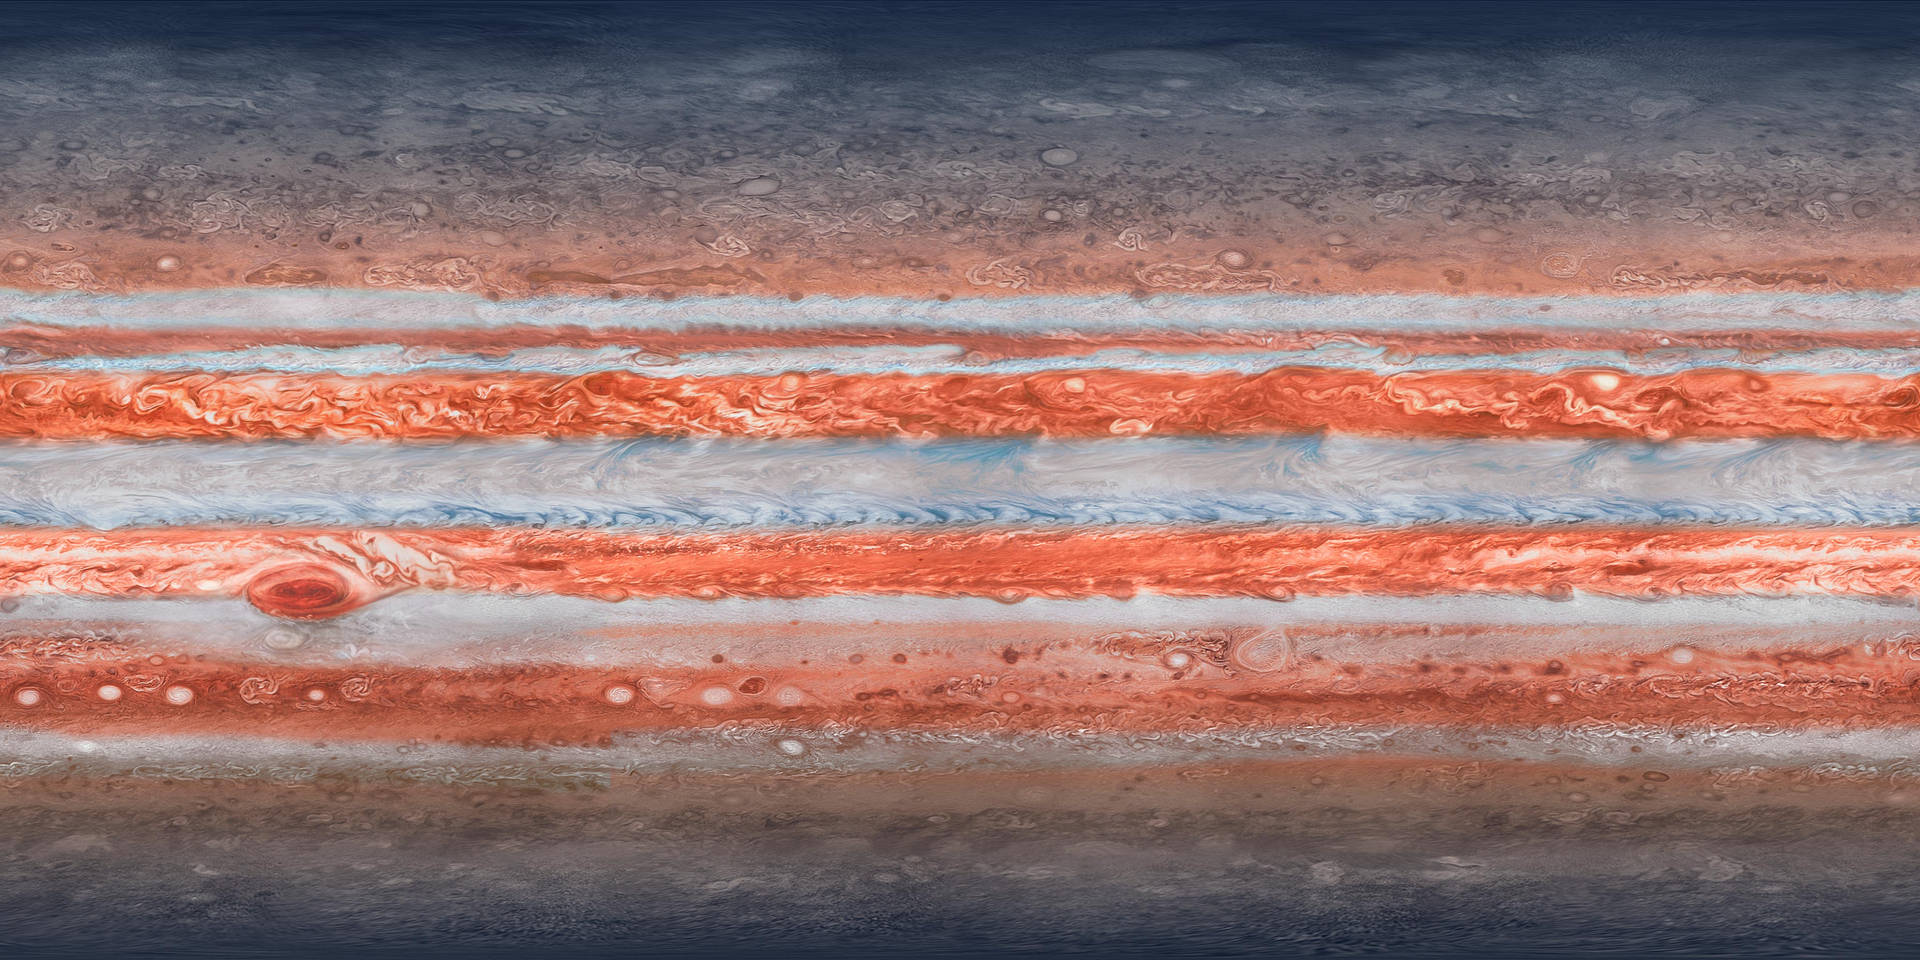 Ipadpro Jupiter Yta Wallpaper